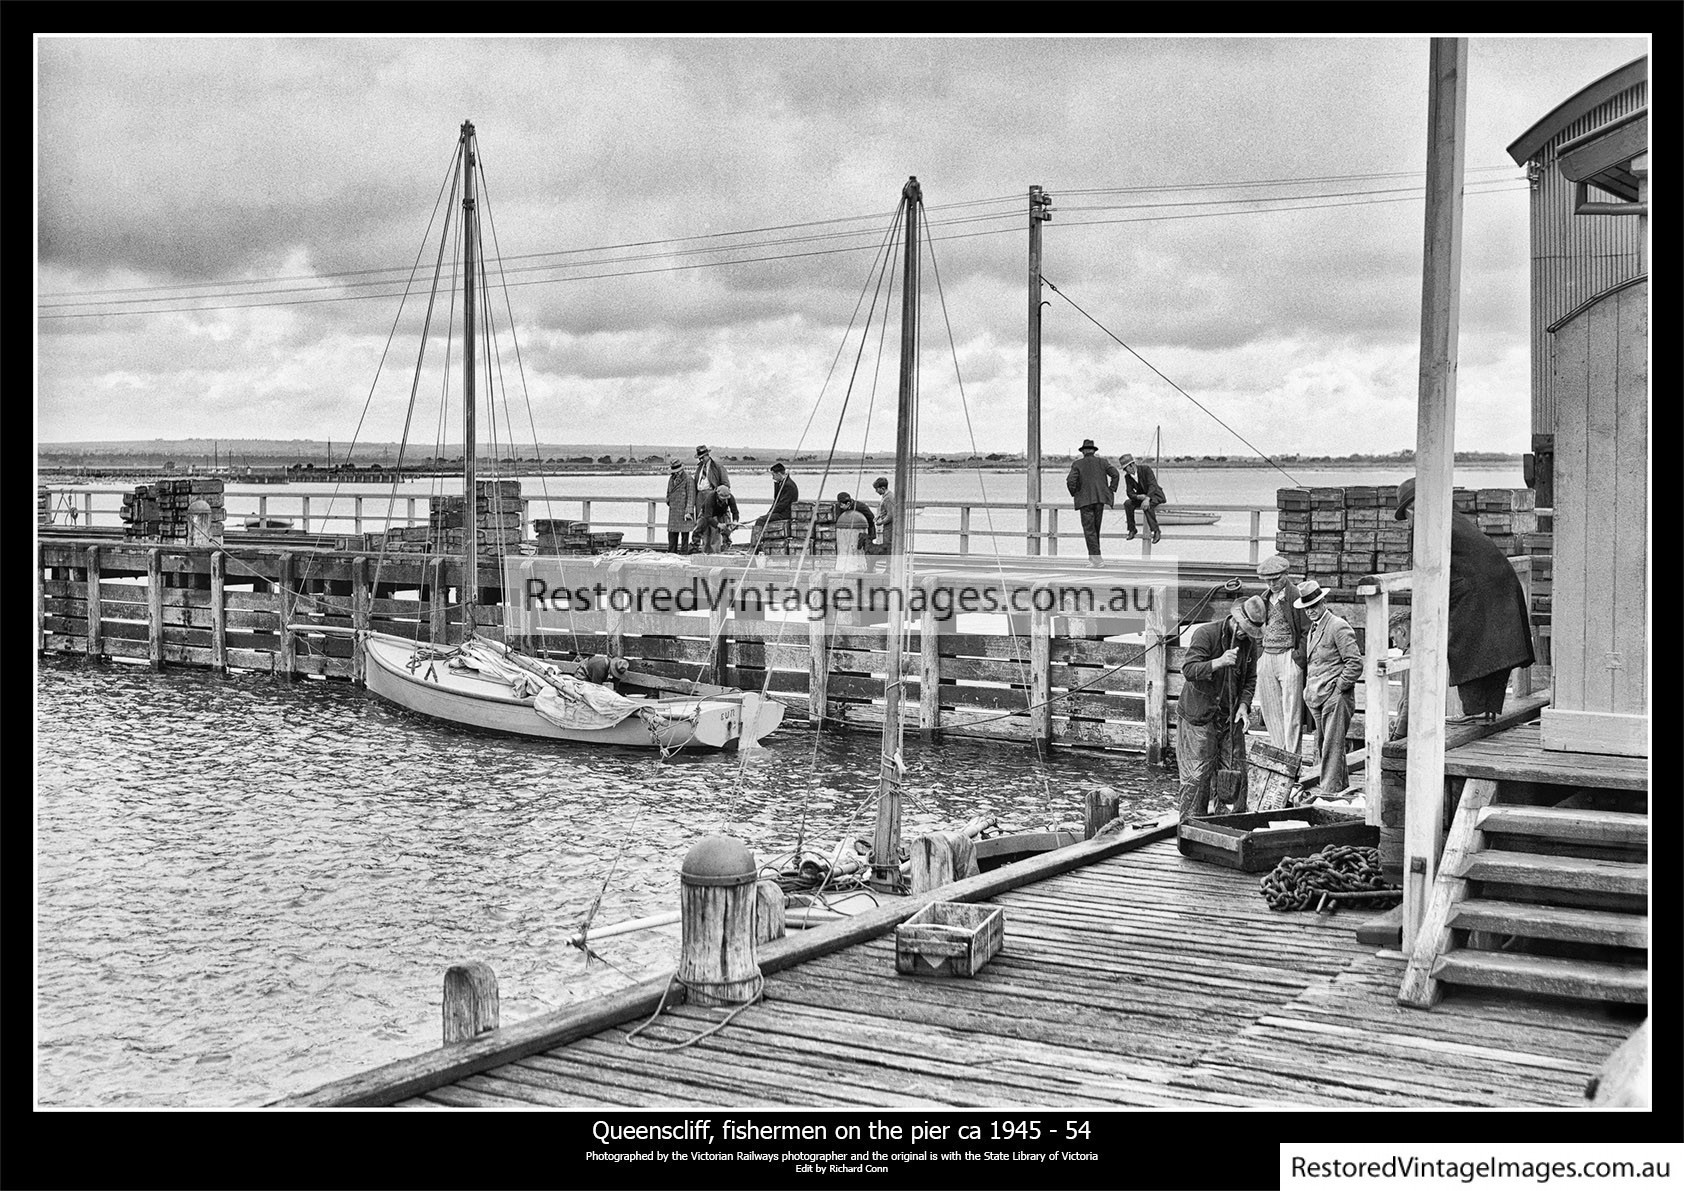 Queenscliff Fishermen On The Pier 1945-54